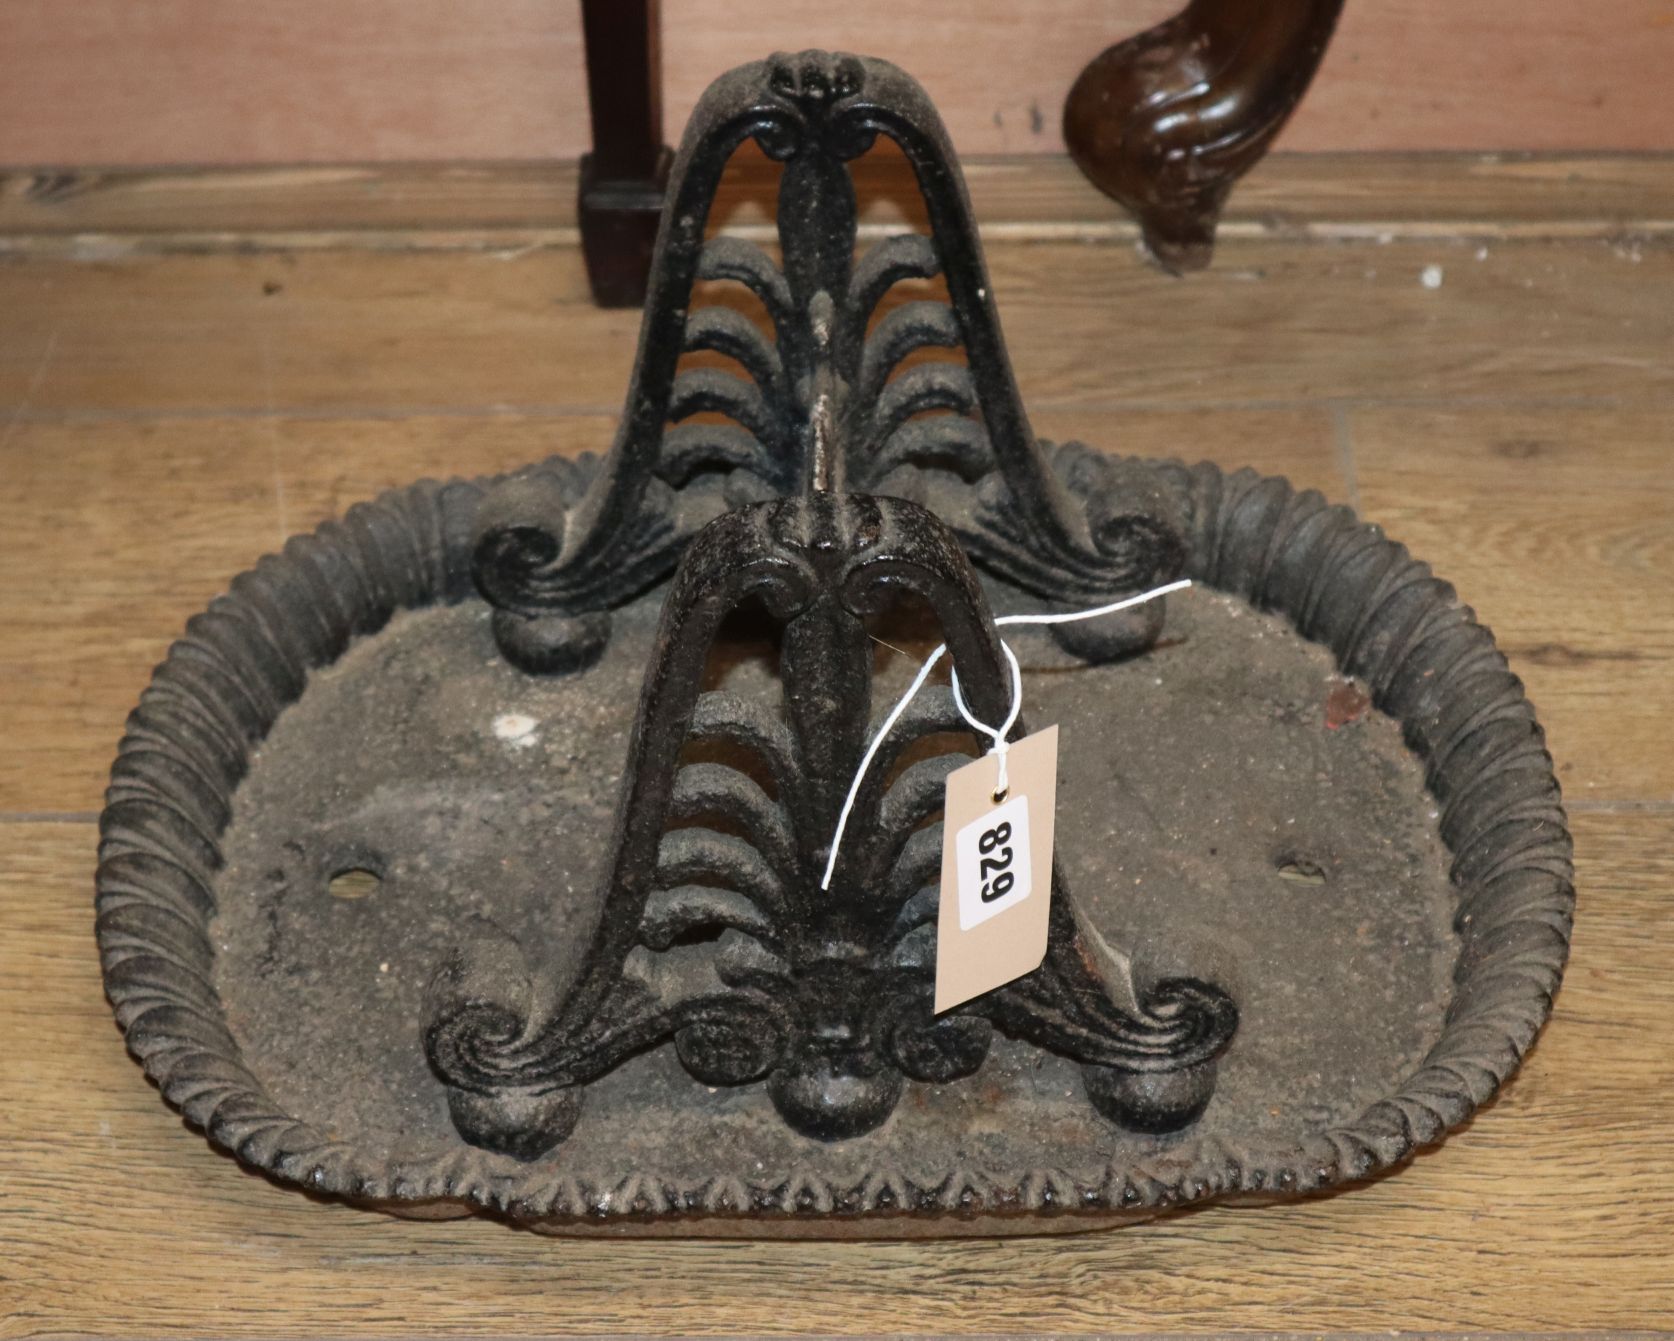 A 19th century cast iron boot scraper